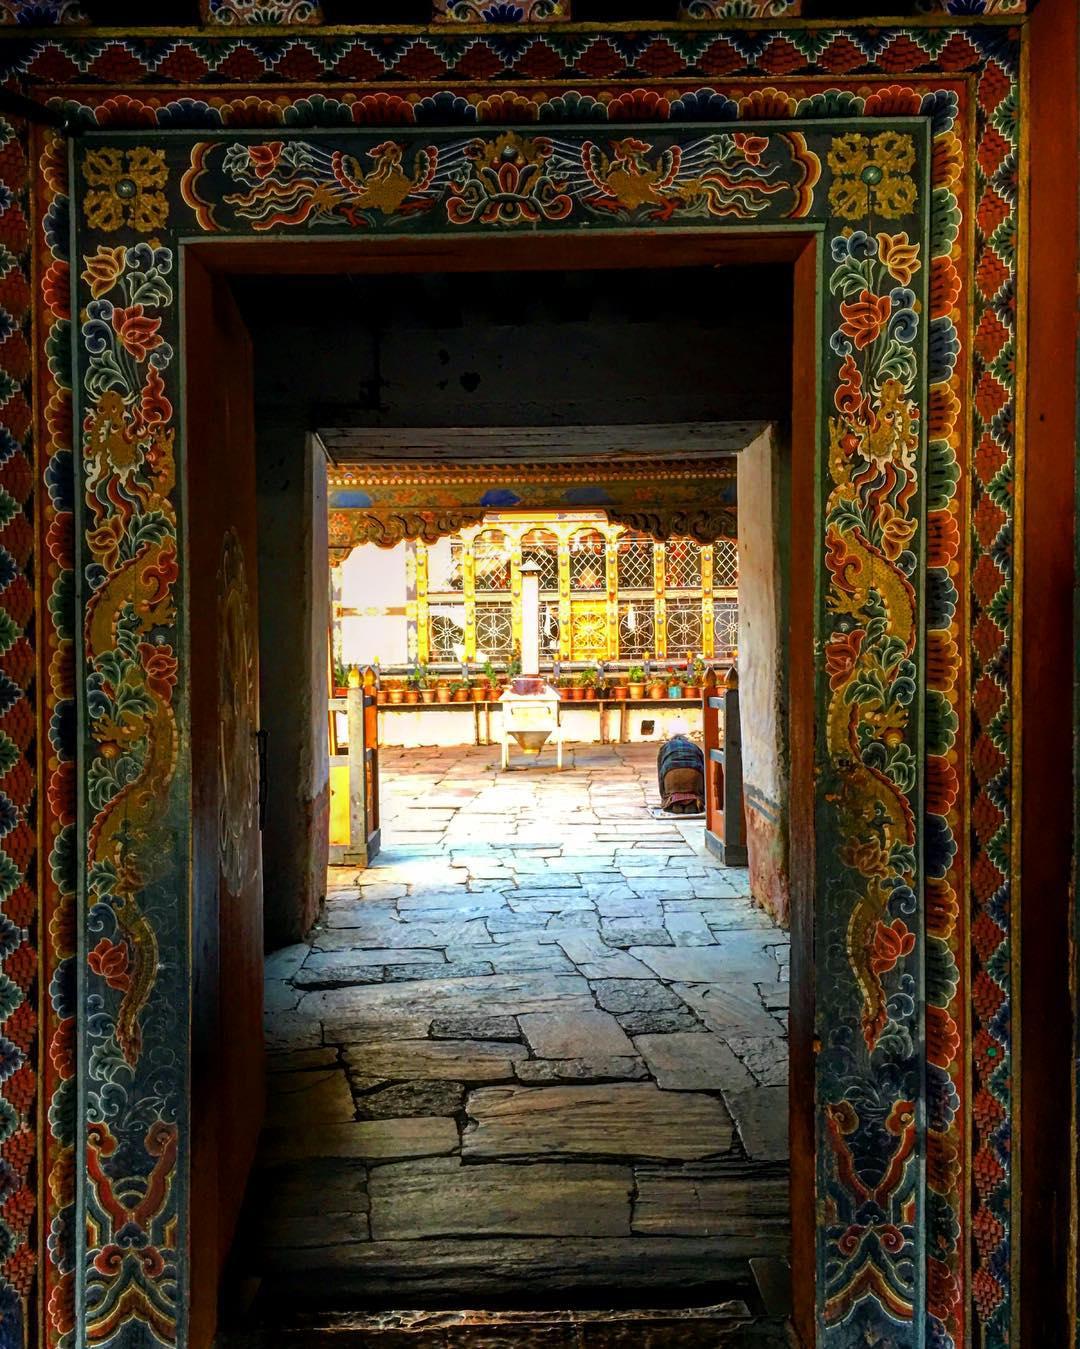 古朴神秘的藏传密宗寺庙  简培寺是659年时松赞干布修建的一处寺庙。传说这处庙宇是为了镇压魔女而修建